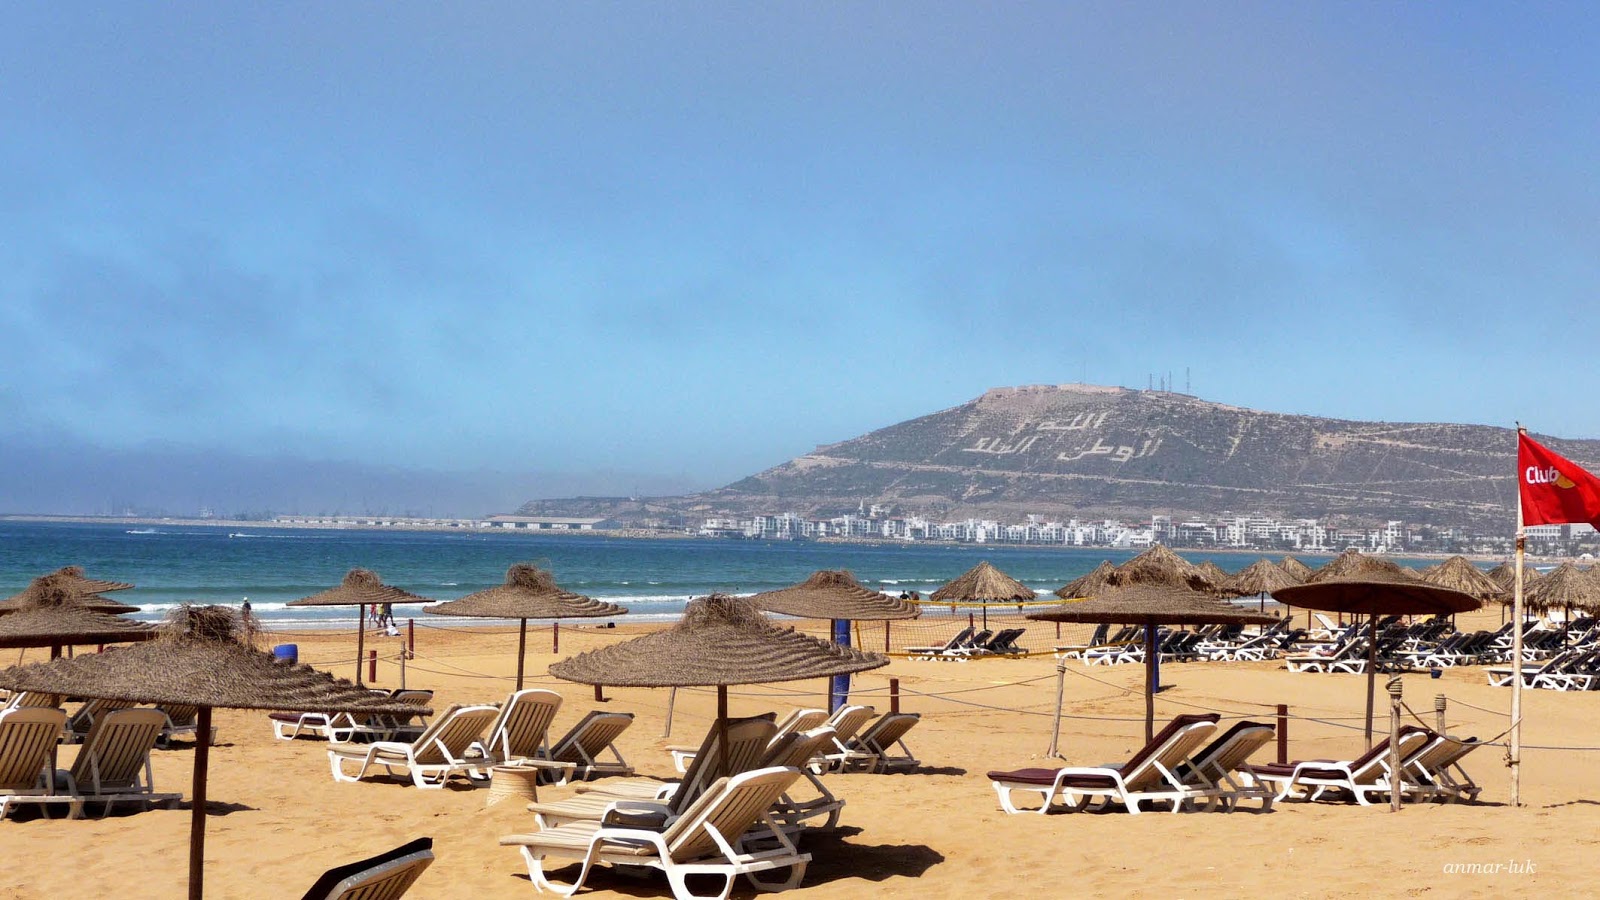 Photo of Agadir Beach and the settlement